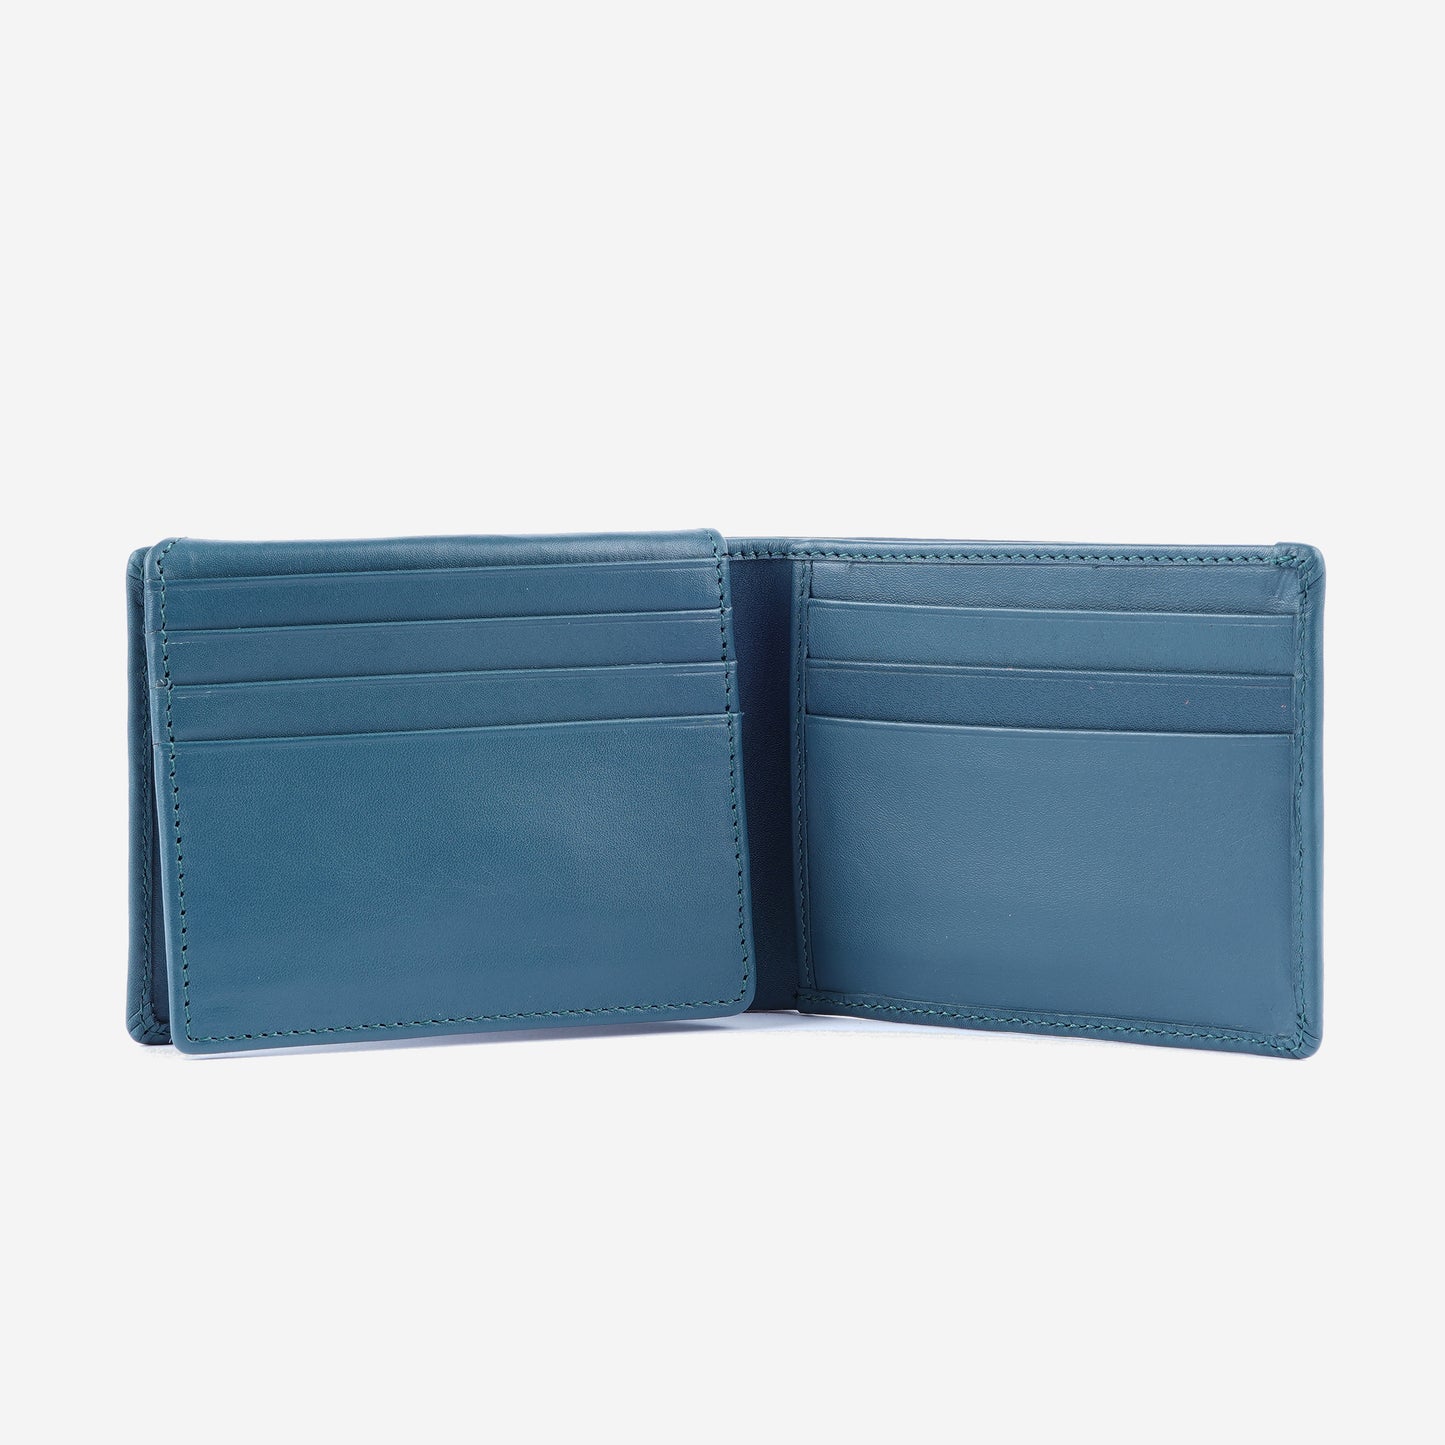 CARLO Weaver Bi-Fold Wallet